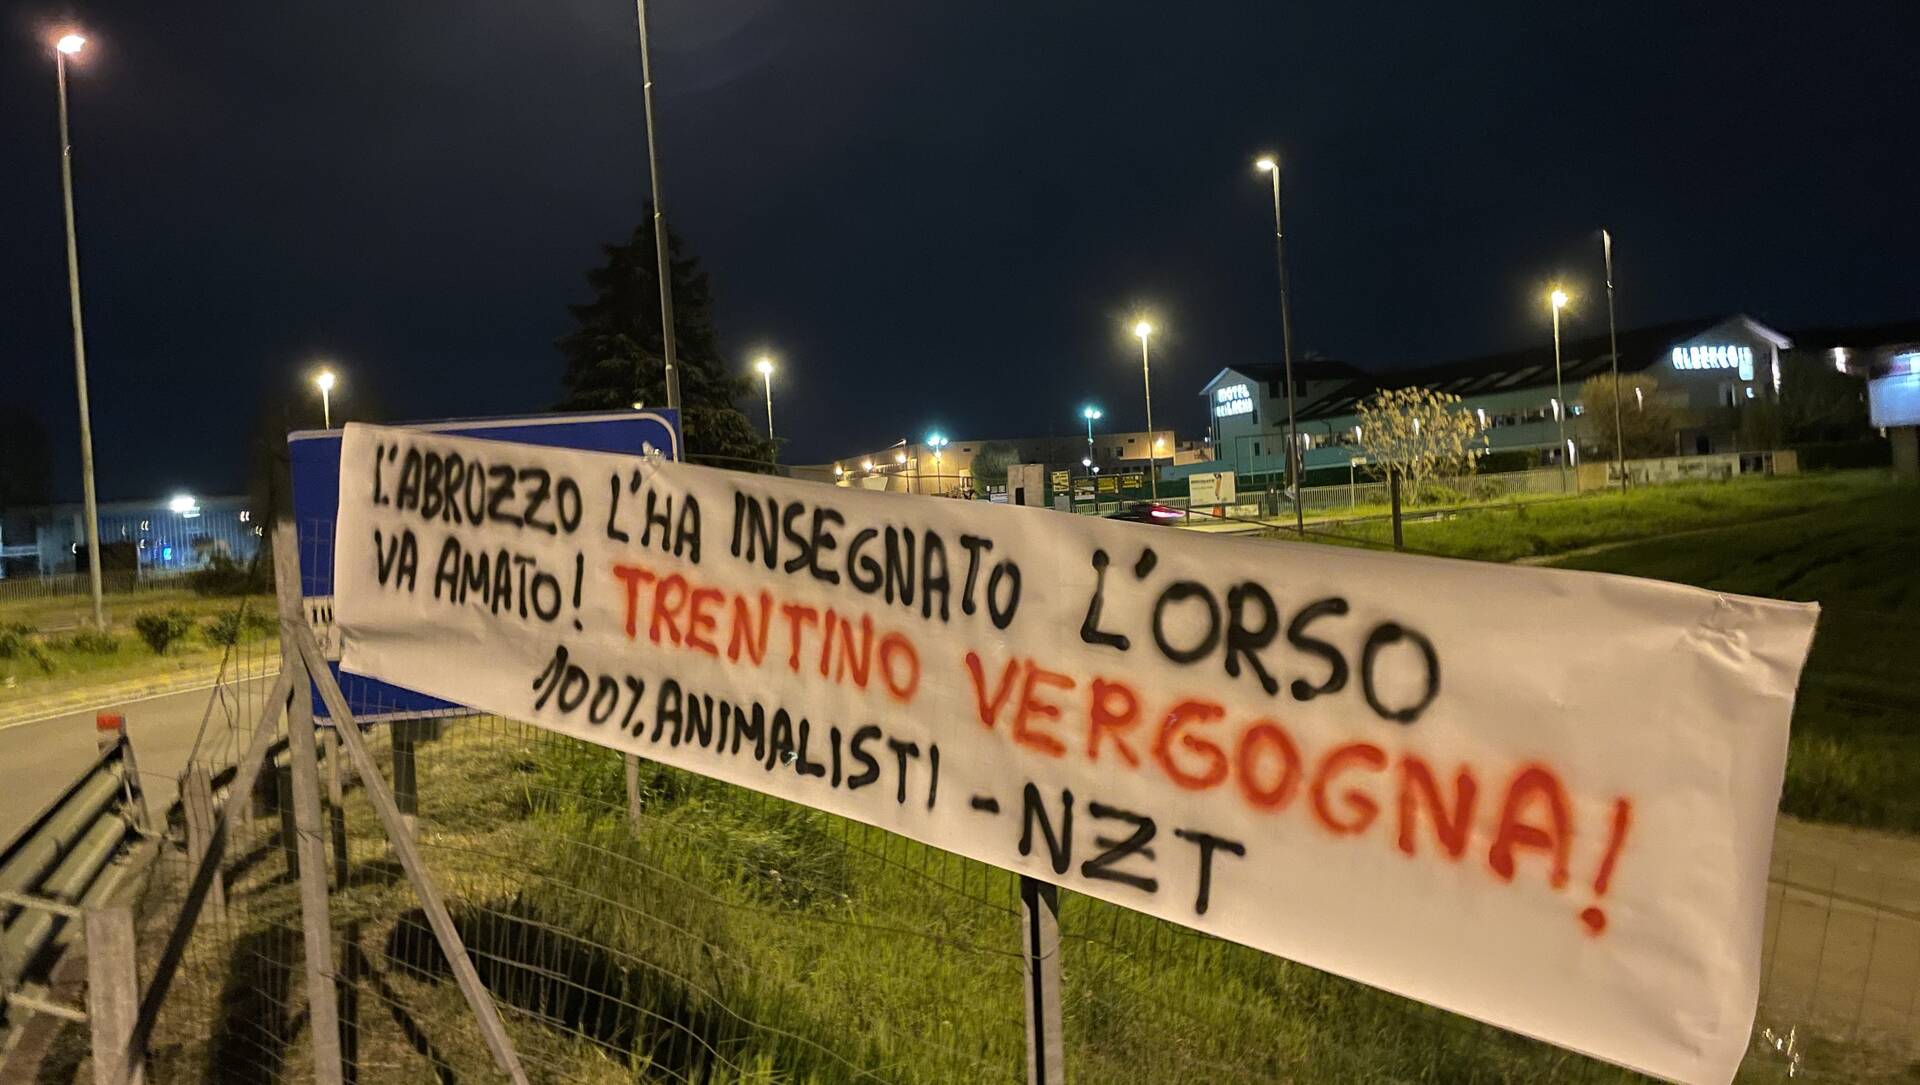 A Saronno e Turate striscioni per salvare gli orsi, boicottando il Trentino